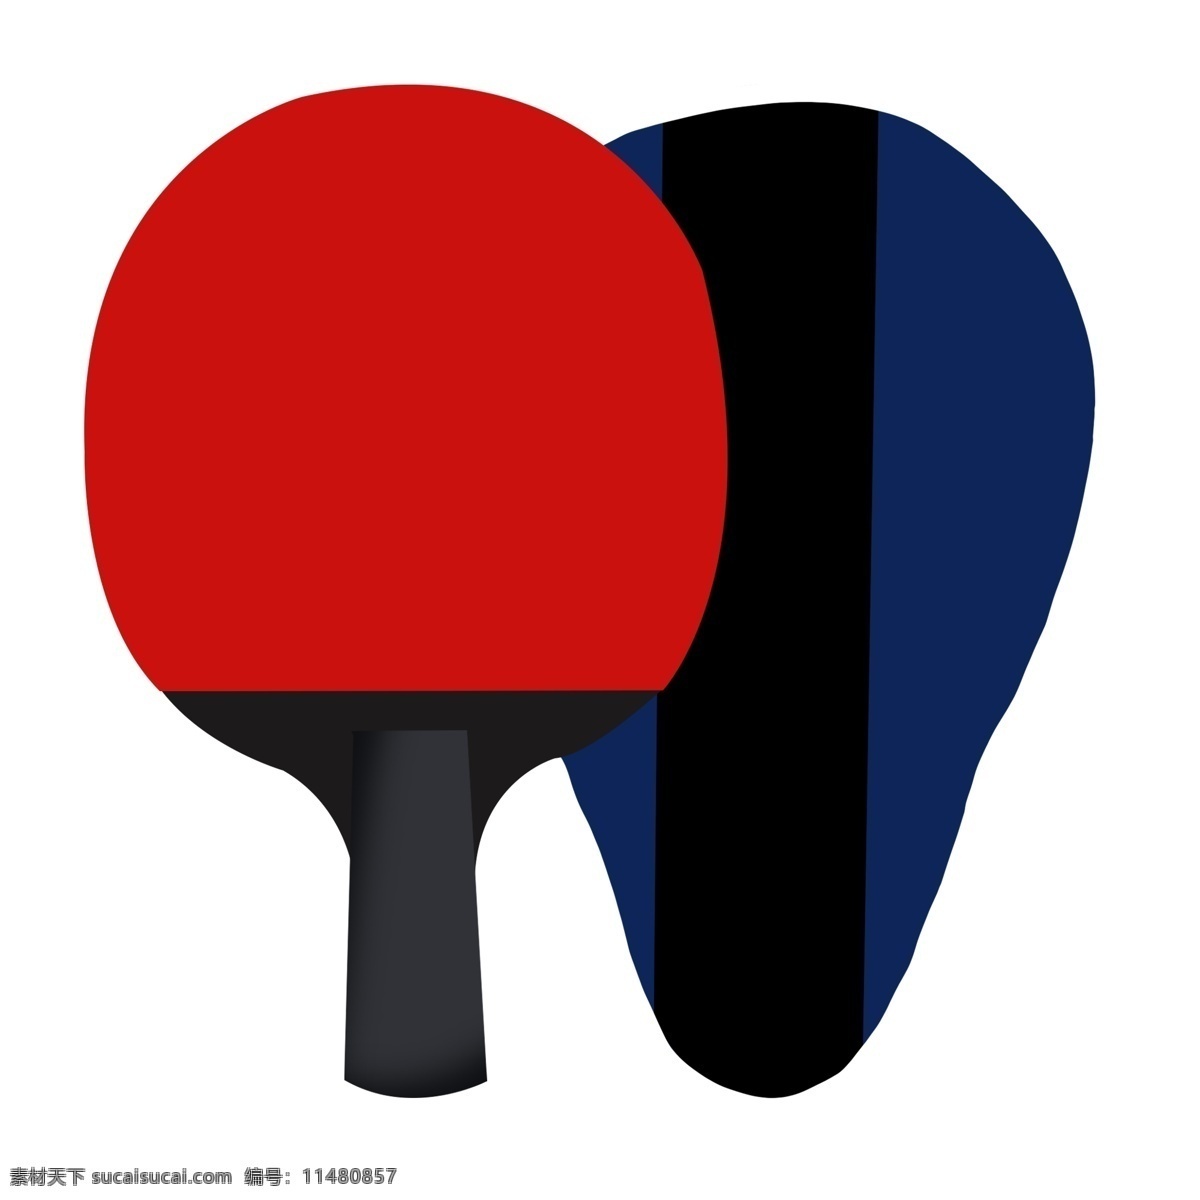 健身 乒乓球 卡通 插画 运动器材 卡通球拍插画 乒乓球拍 蓝色的袋子 黑色的手柄 球类运动 创意运动插画